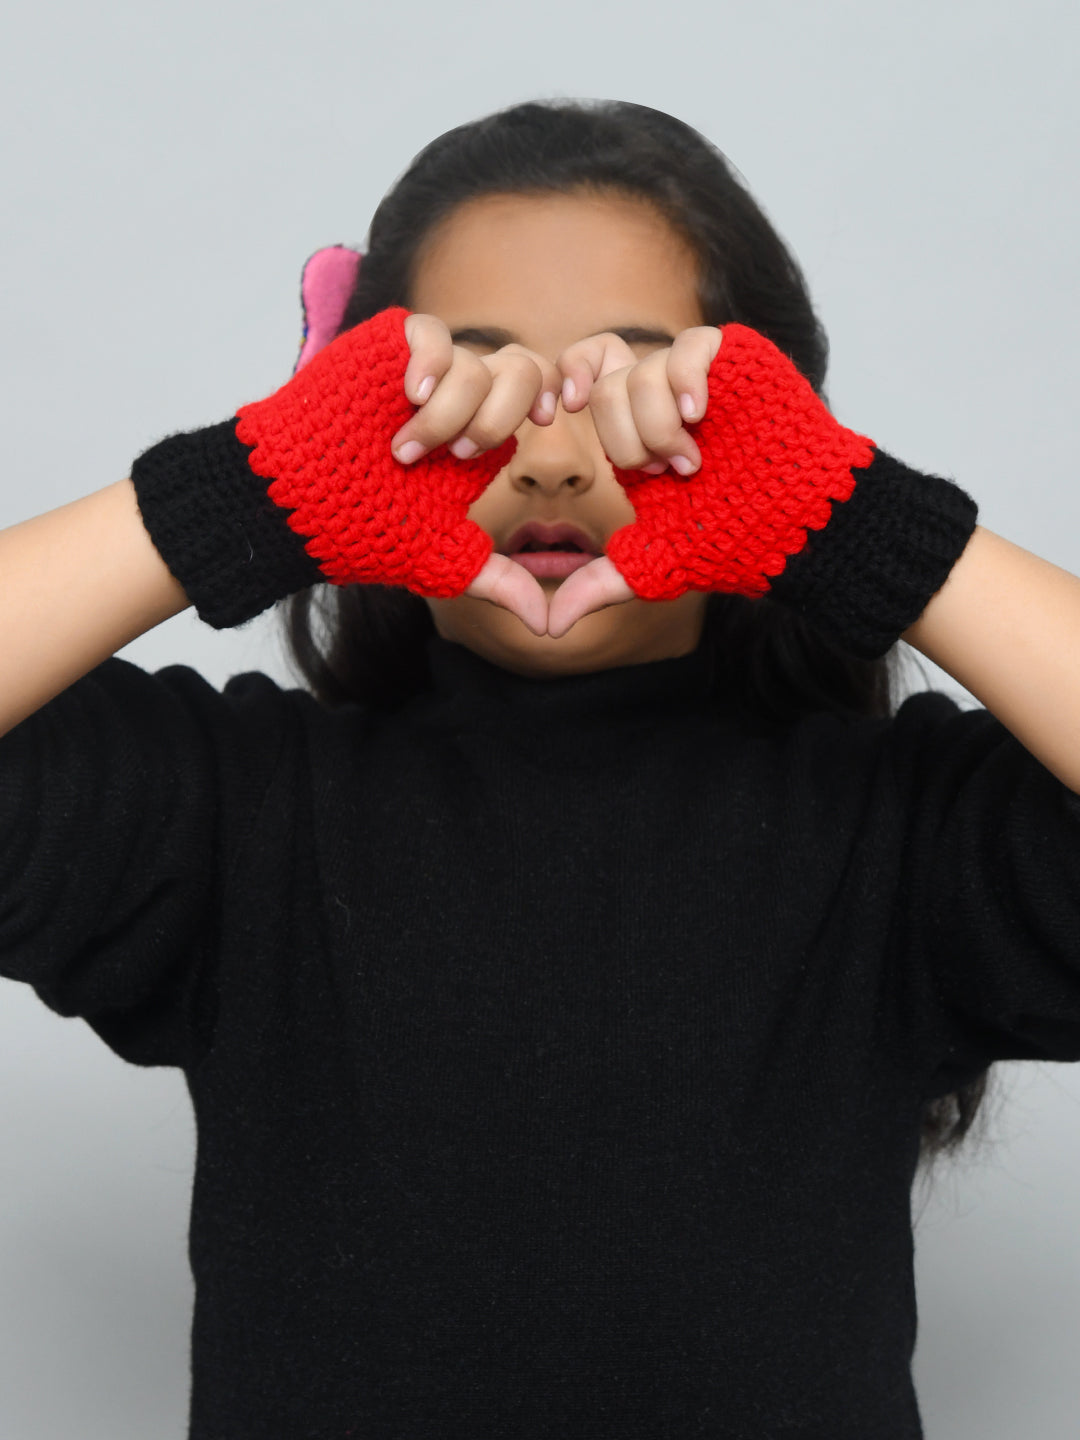 Red & Black Handmade Woollen Fingerless Gloves For Girls and Boys